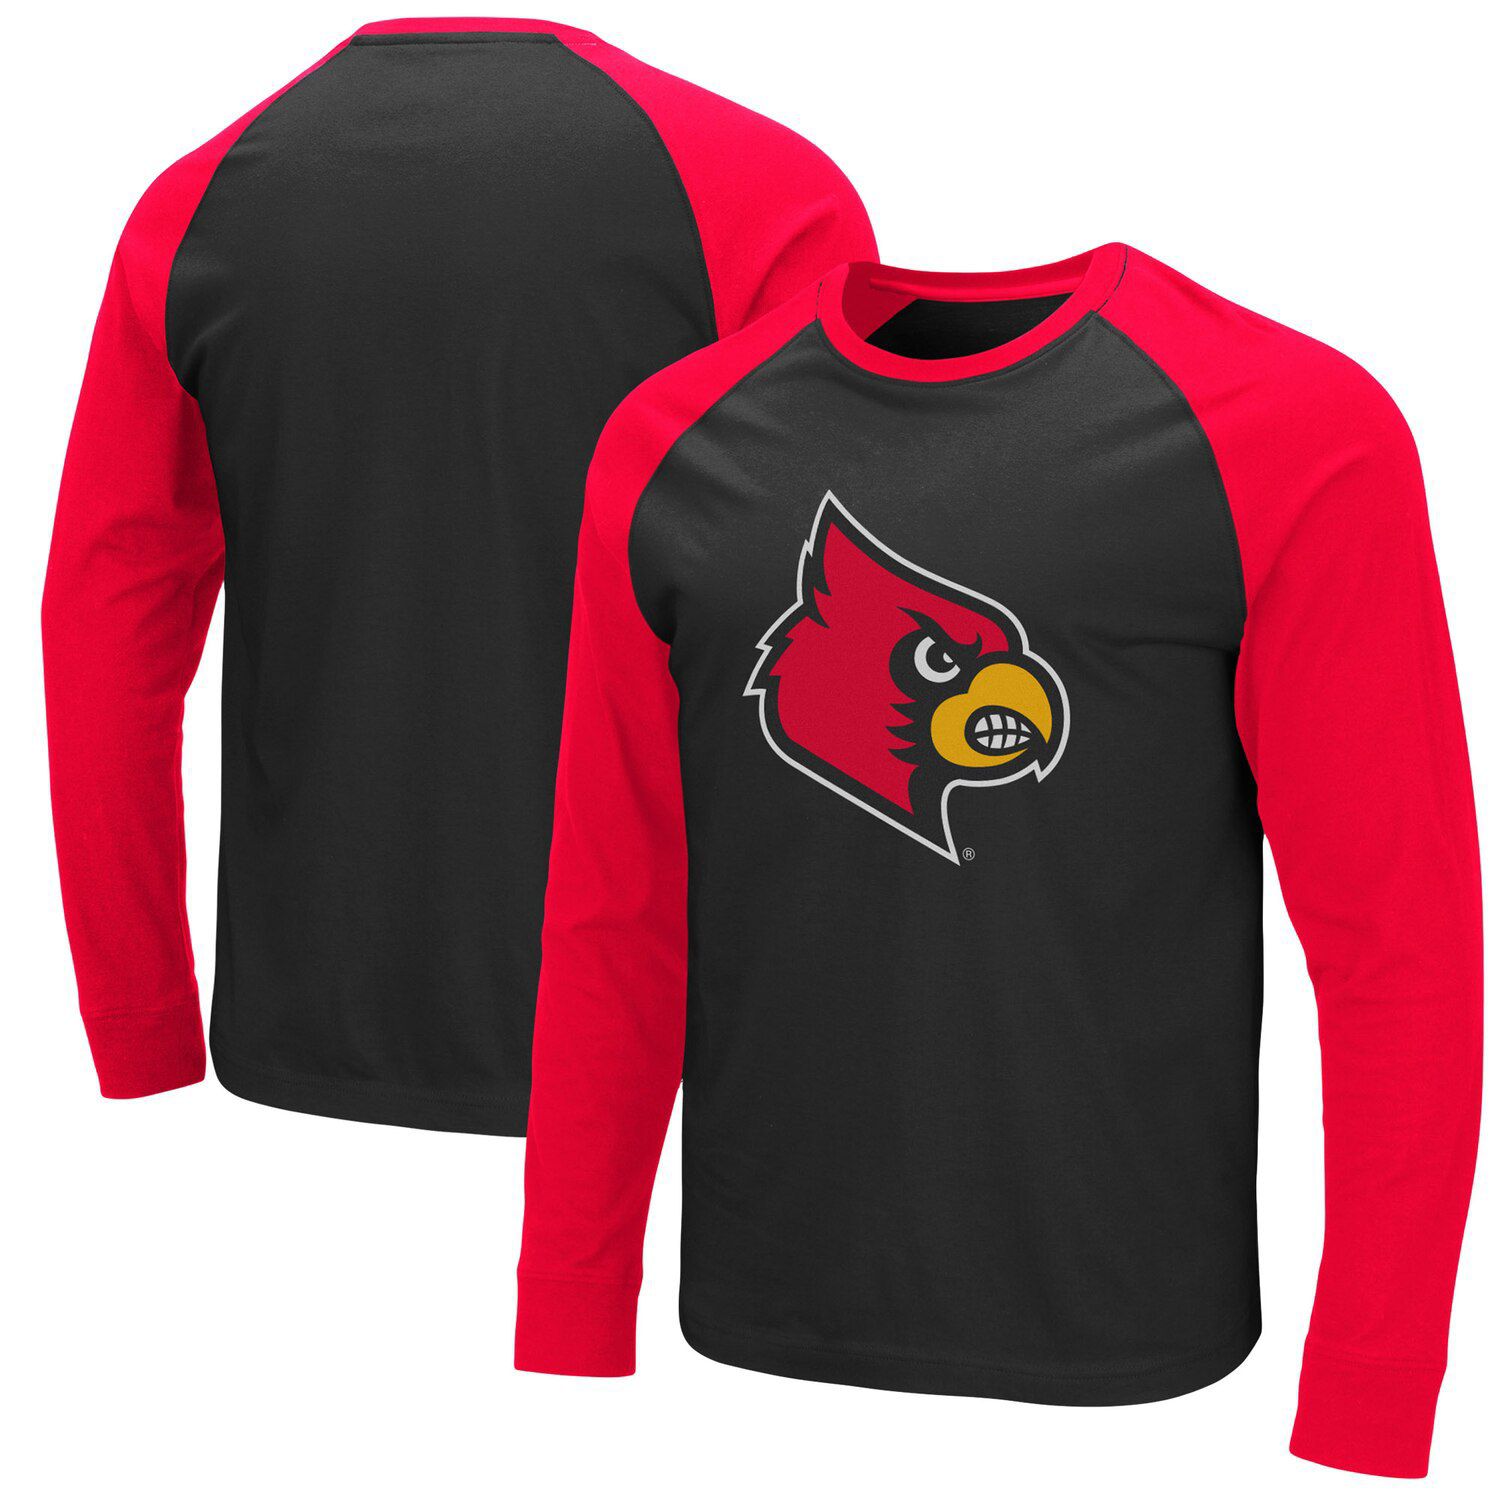 cardinals long sleeve shirt